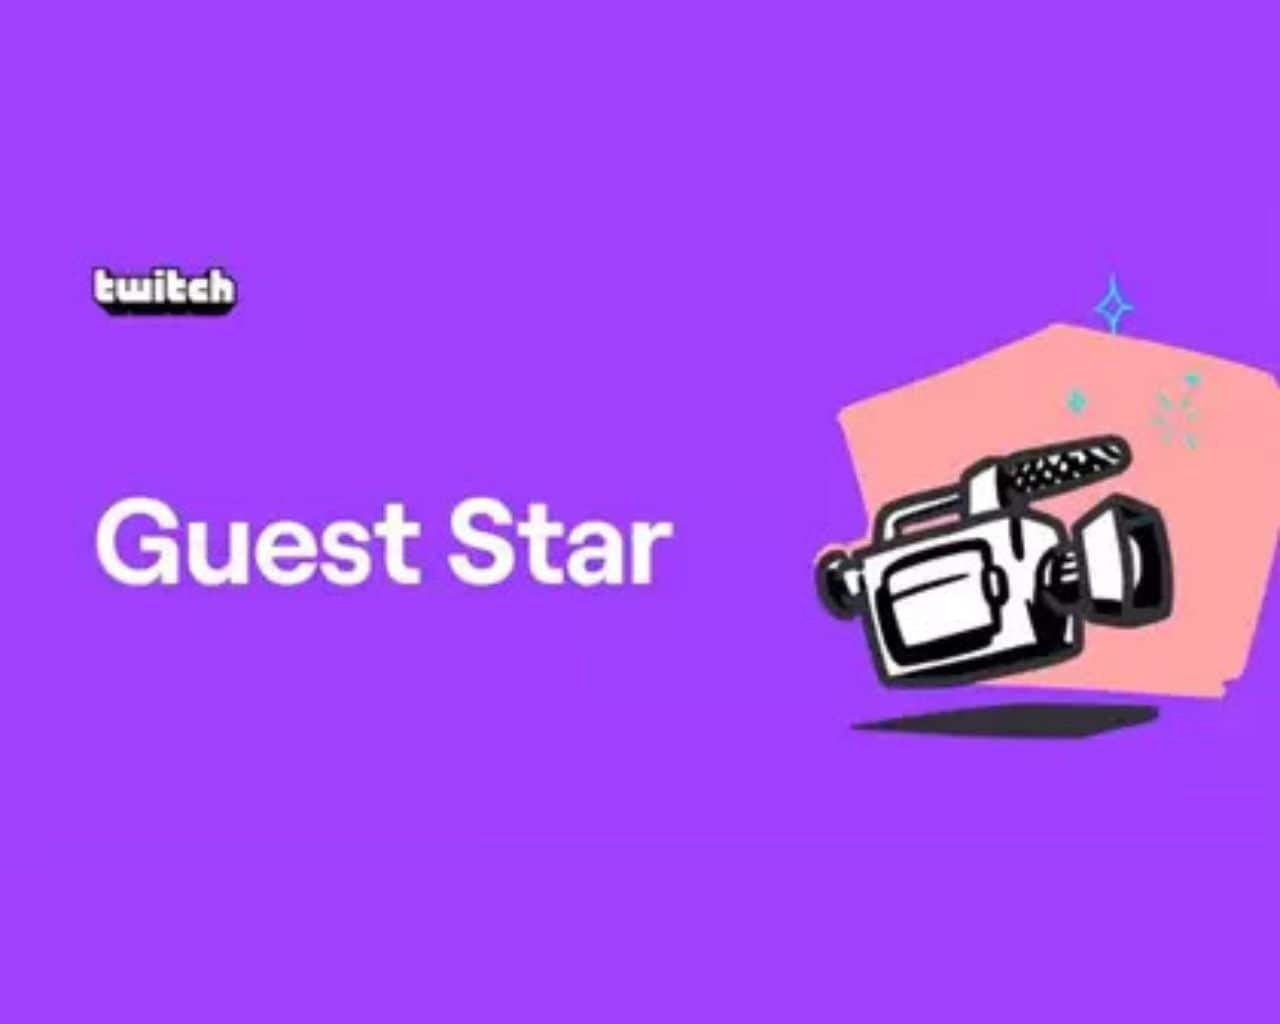 Guest Star, característica de Twitch